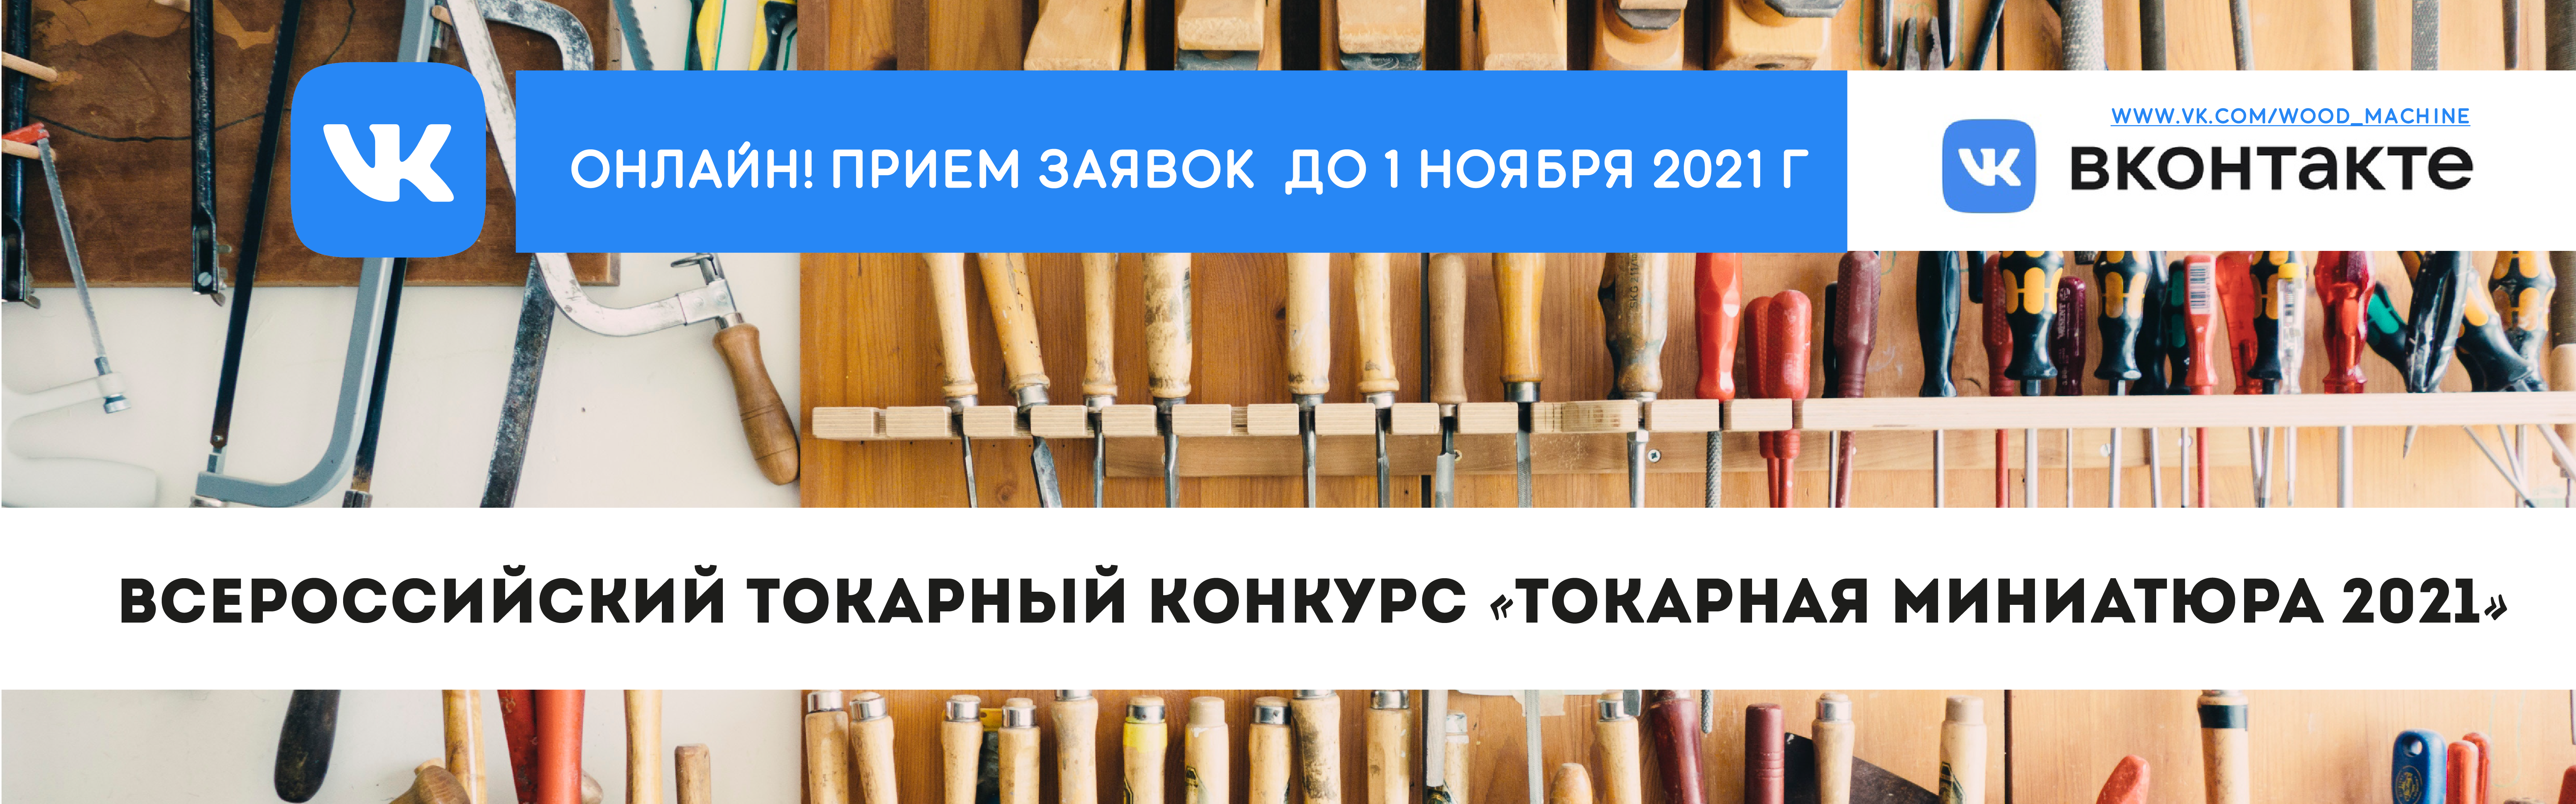 Всероссийский онлайн-конкурс «Токарная миниатюра 2021»